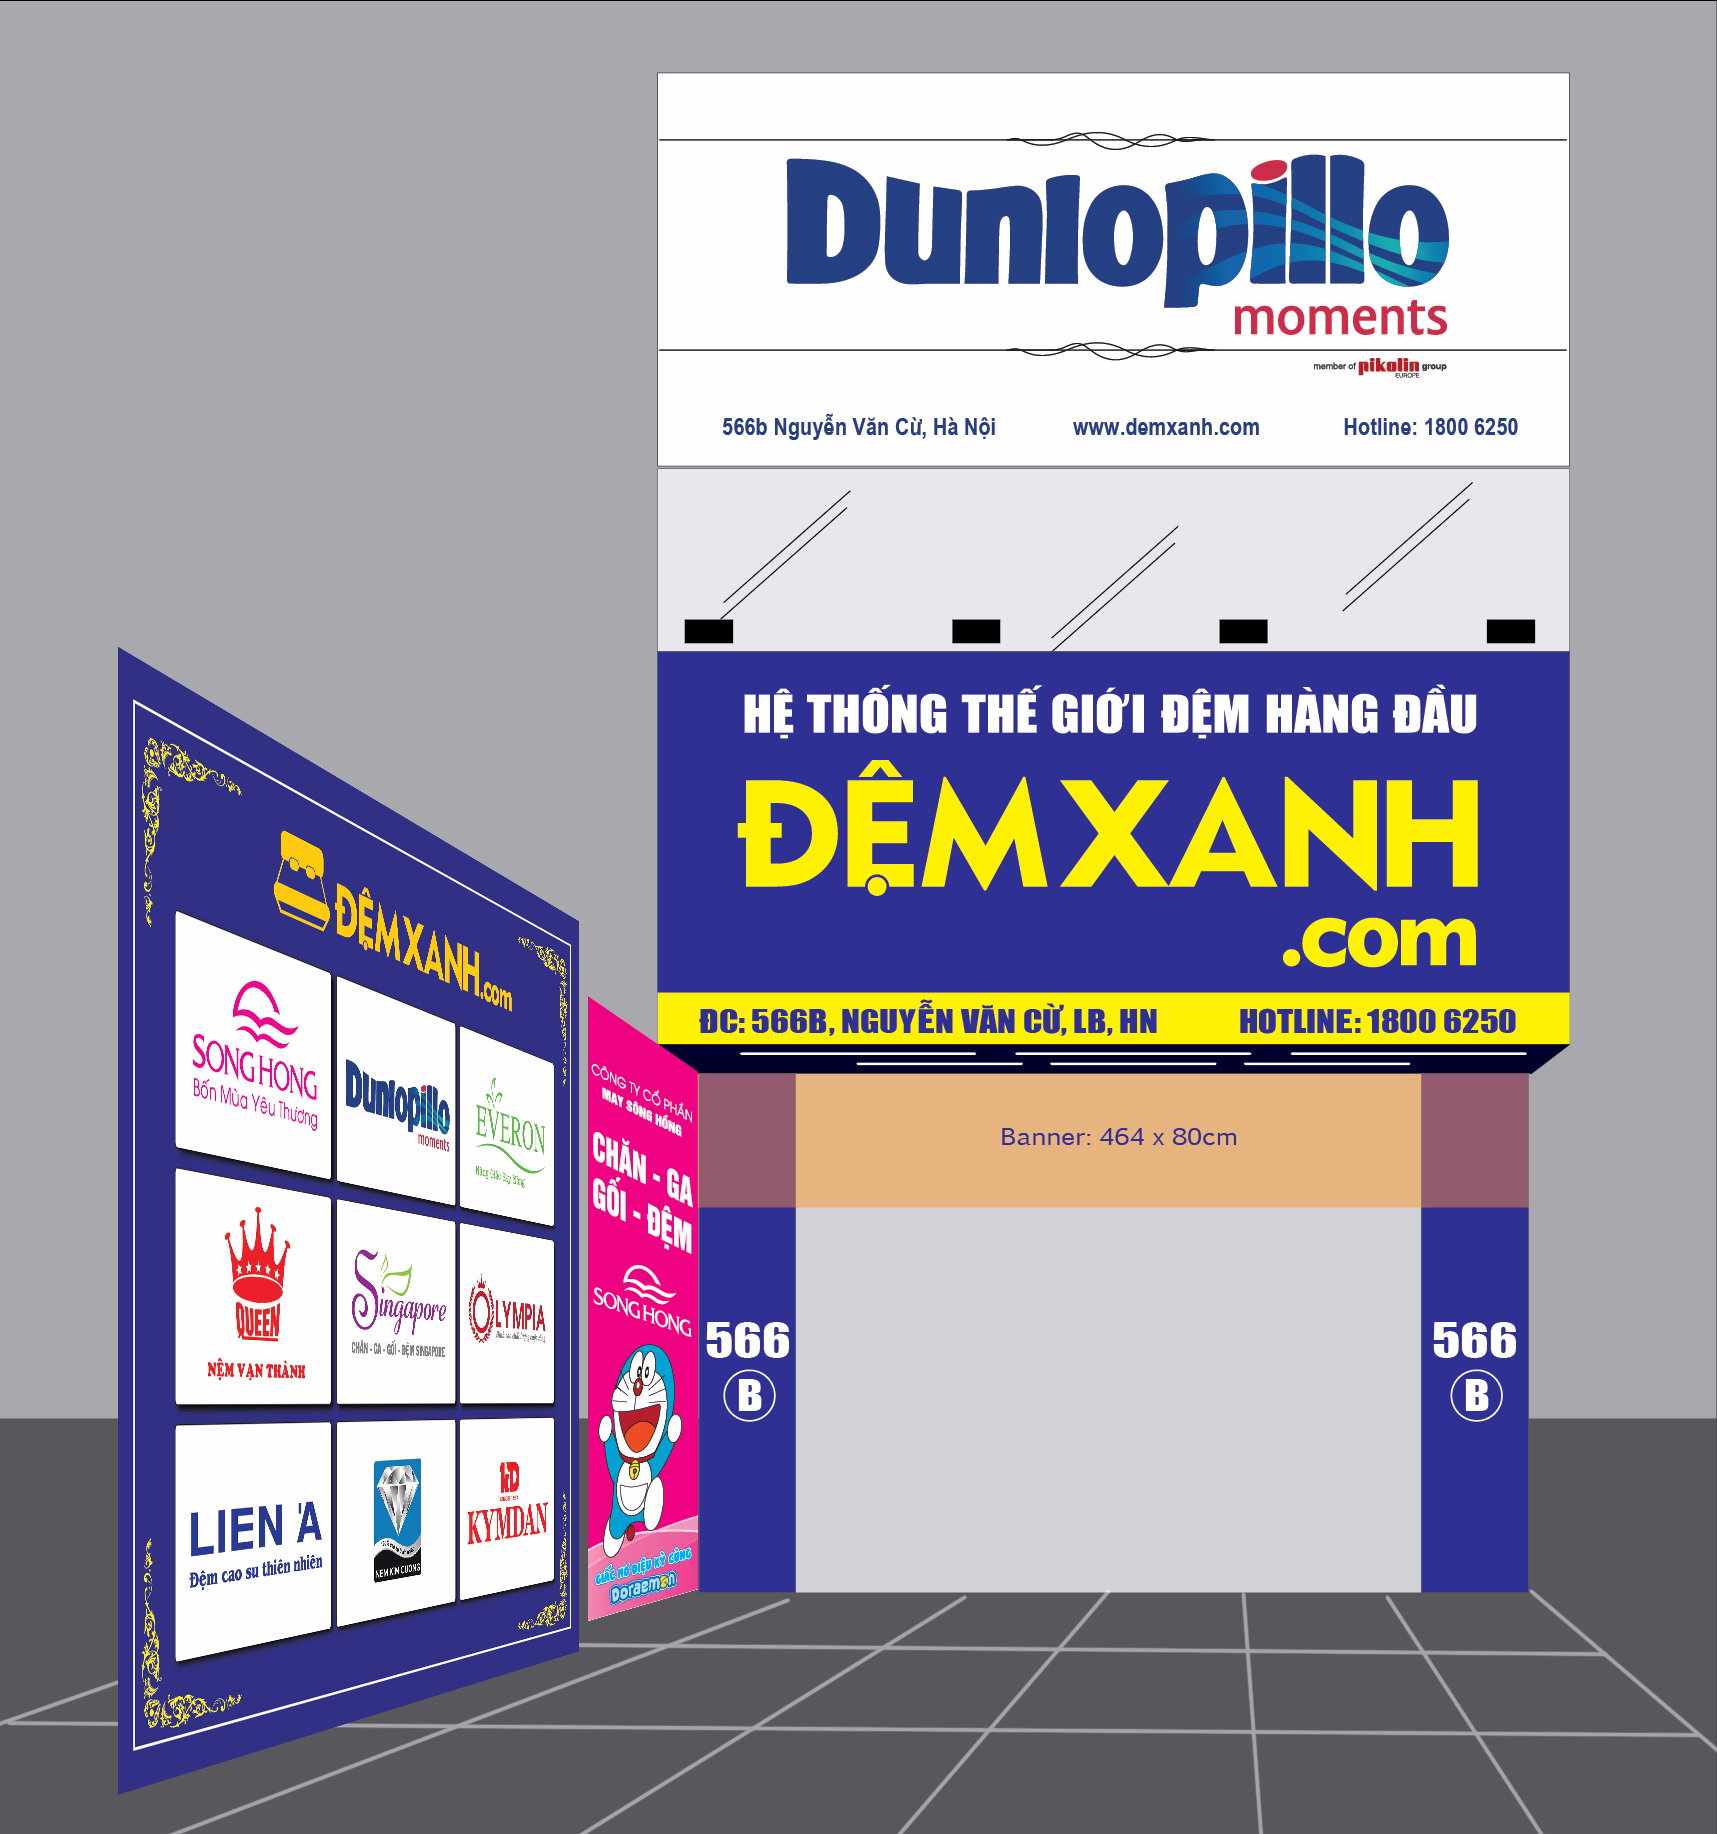 Đệm Xanh đẩy mạnh đào tạo nhân viên bán hàng thông qua training sản phẩm Dunlopillo